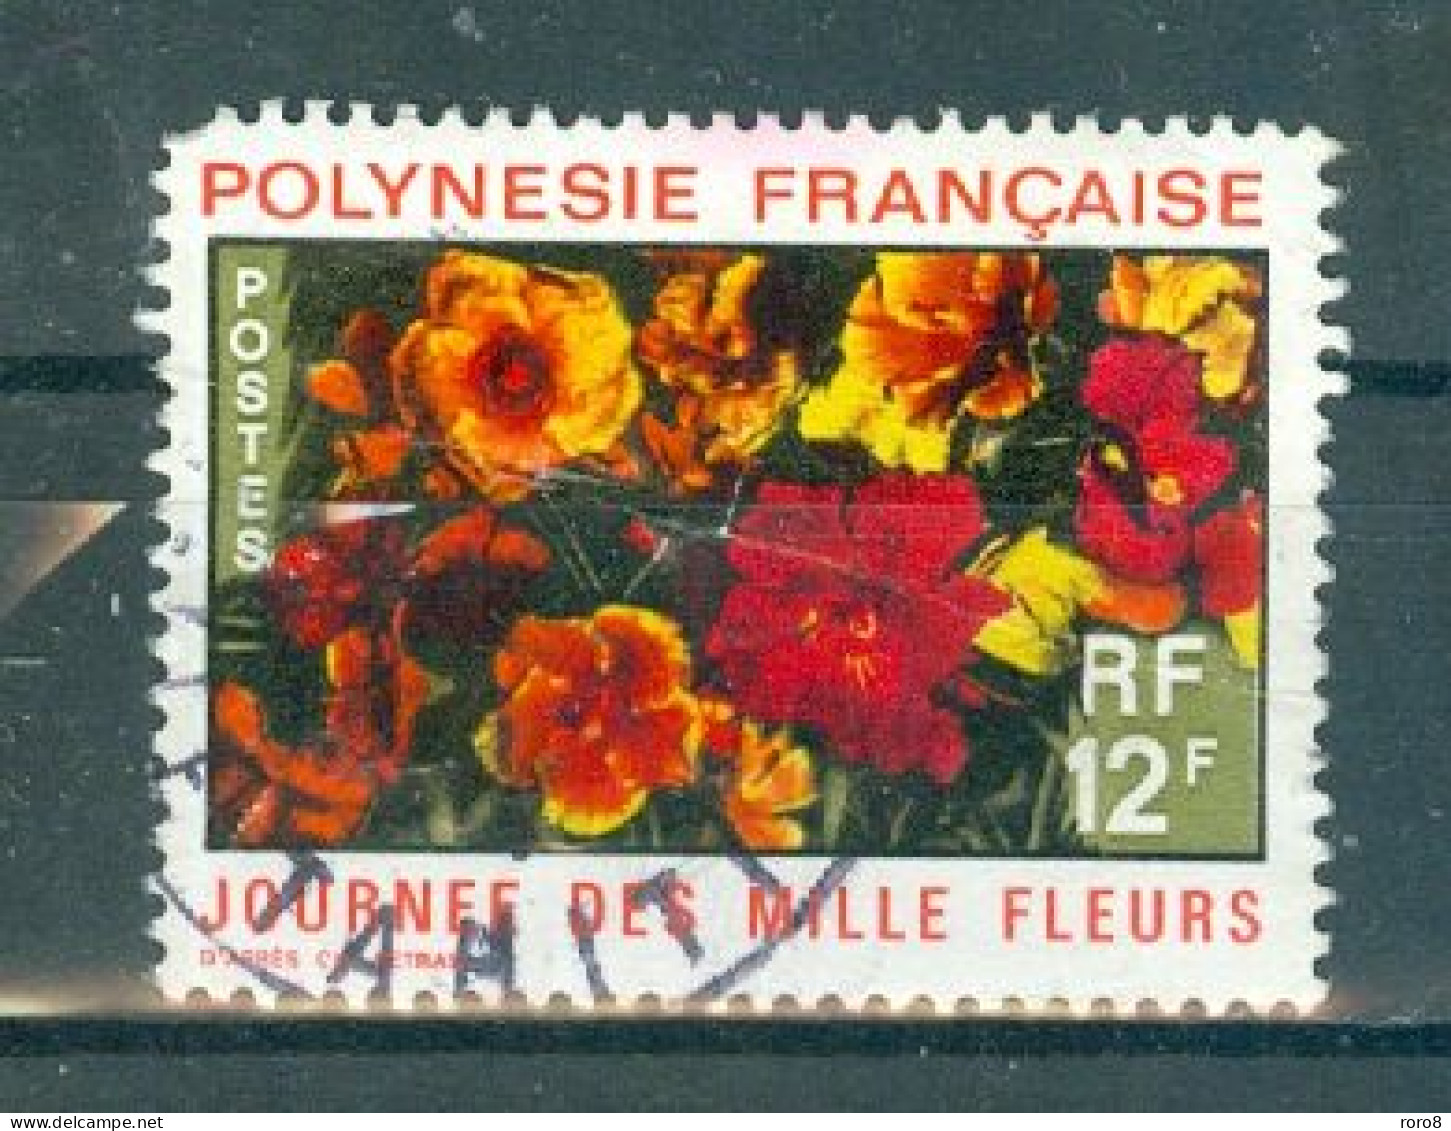 POLYNESIE - N°84 Oblitéré. Journée Des Mille Fleurs. (dent Courte Coin Gauche Haut). - Used Stamps